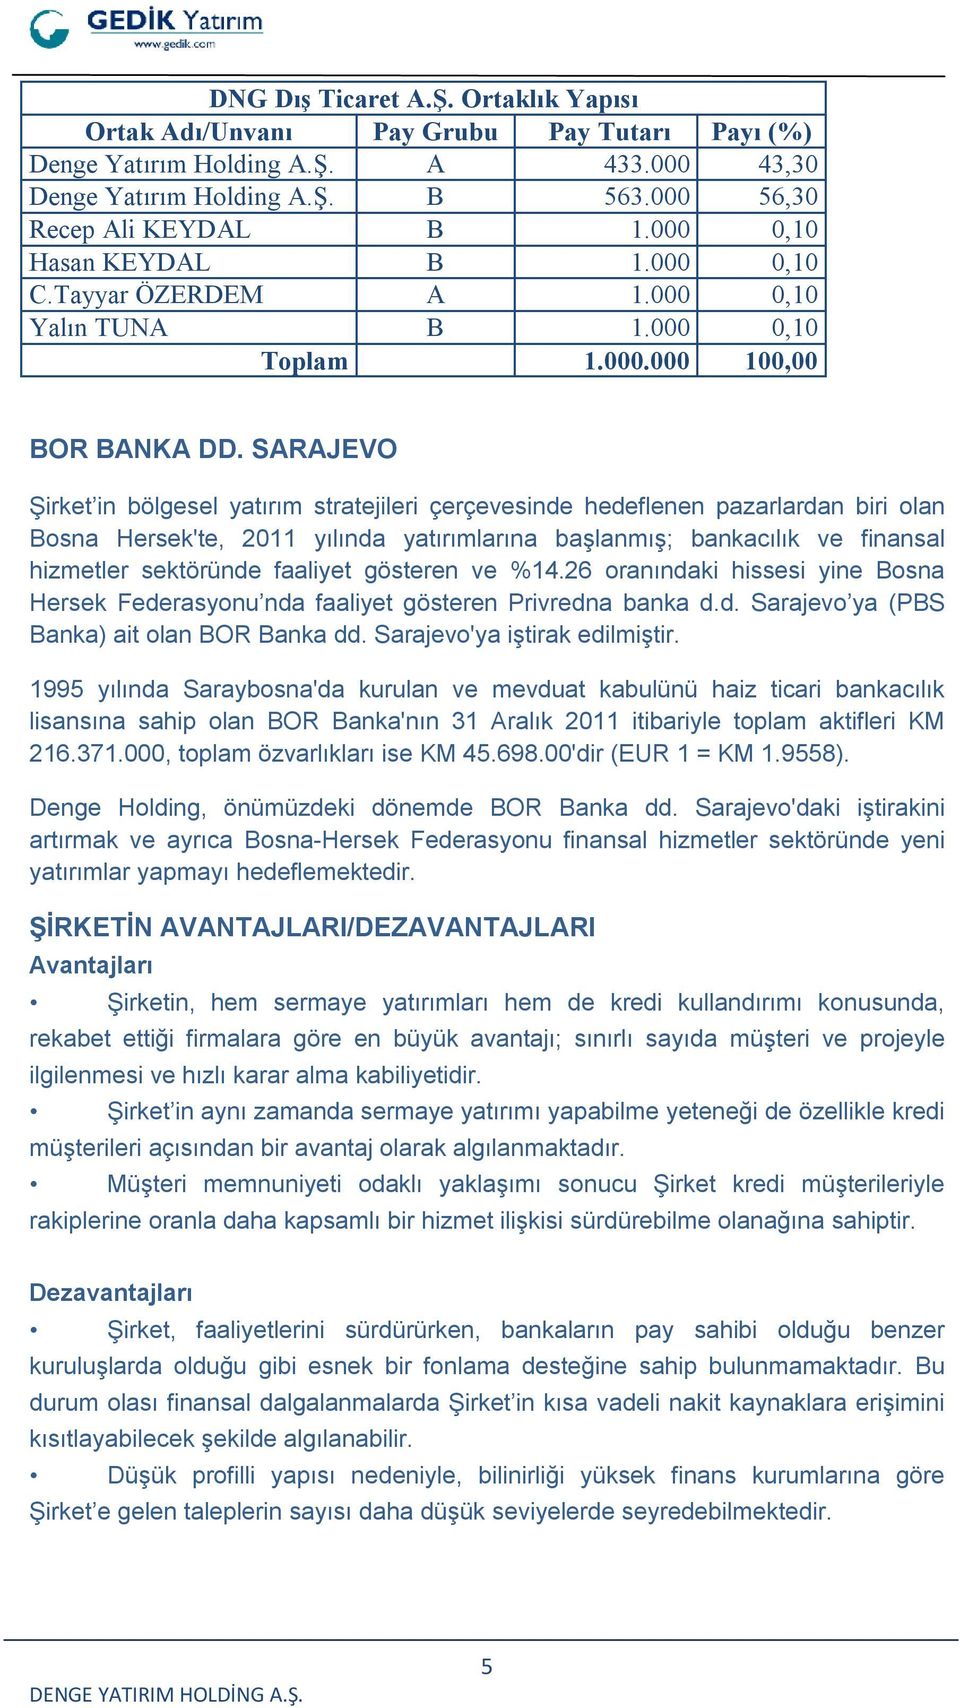 SARAJEVO Şirket in bölgesel yatırım stratejileri çerçevesinde hedeflenen pazarlardan biri olan Bosna Hersek'te, 2011 yılında yatırımlarına başlanmış; bankacılık ve finansal hizmetler sektöründe